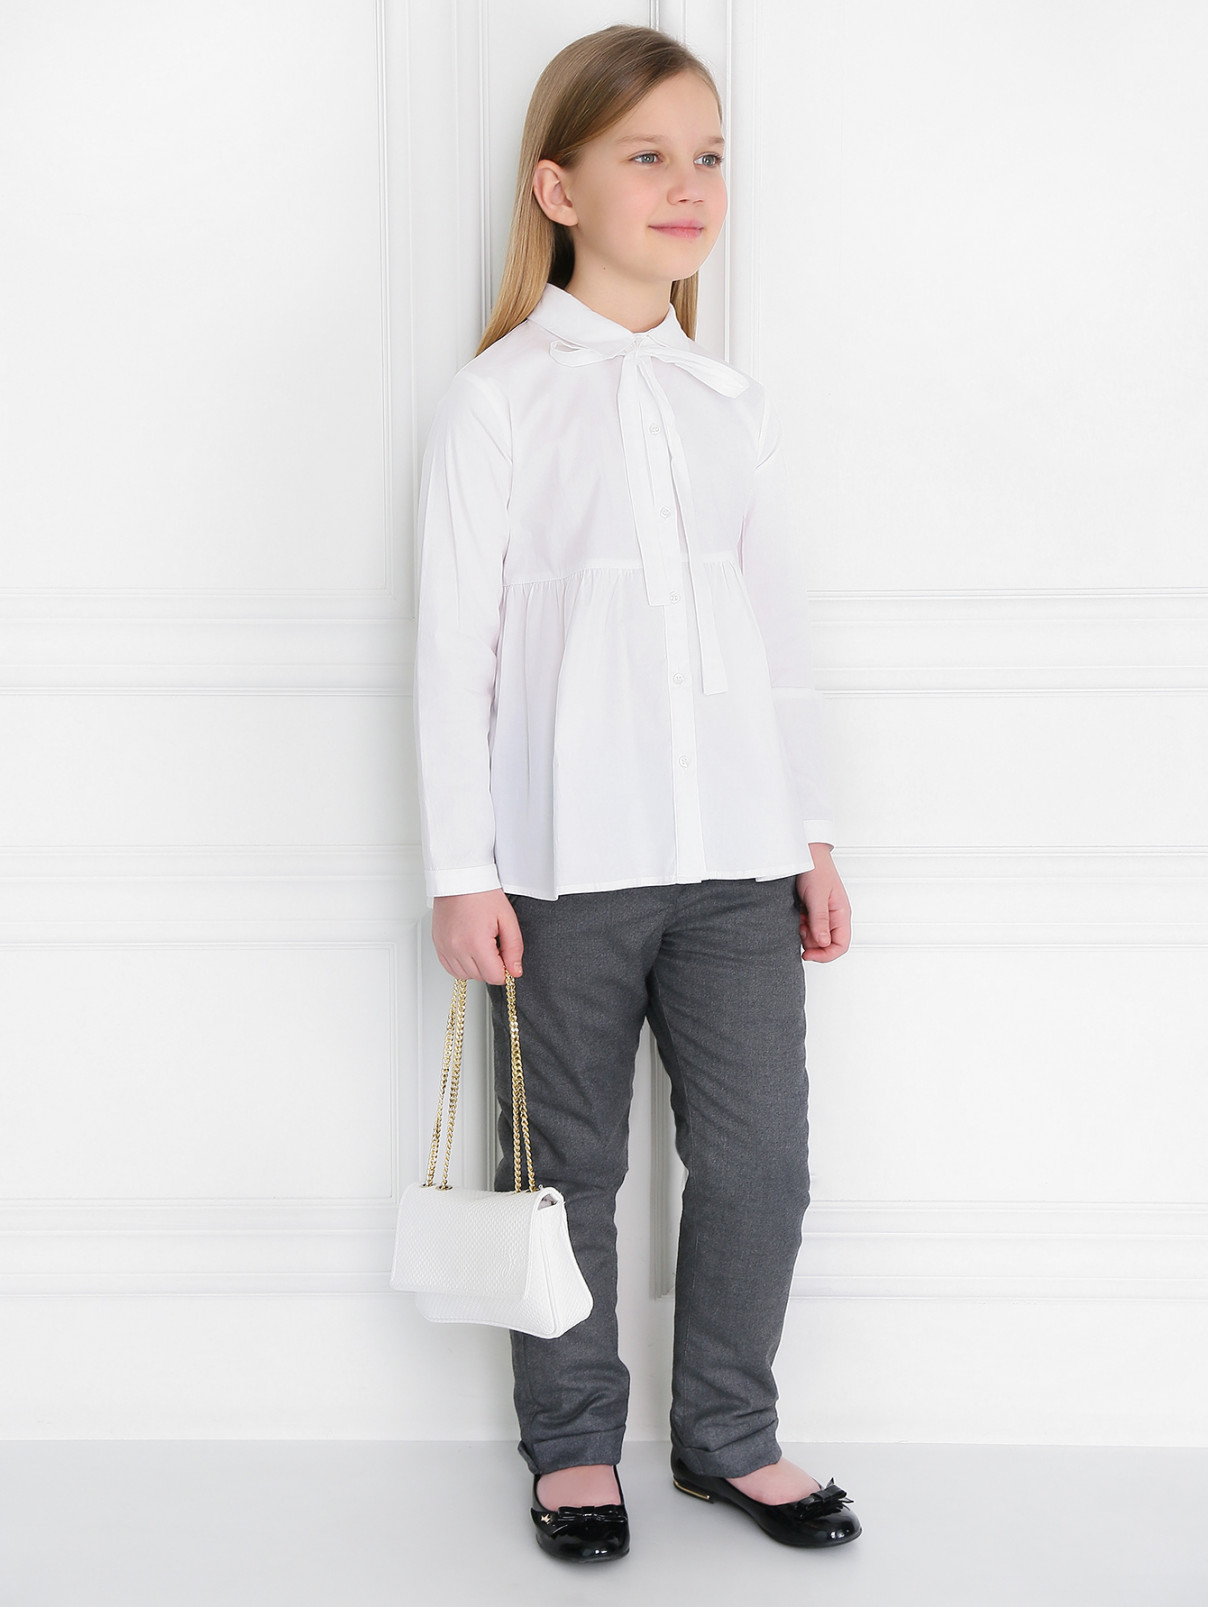 Хлопковая рубашка с оборкой и декоративной лентой Aletta Couture  –  Модель Общий вид  – Цвет:  Белый